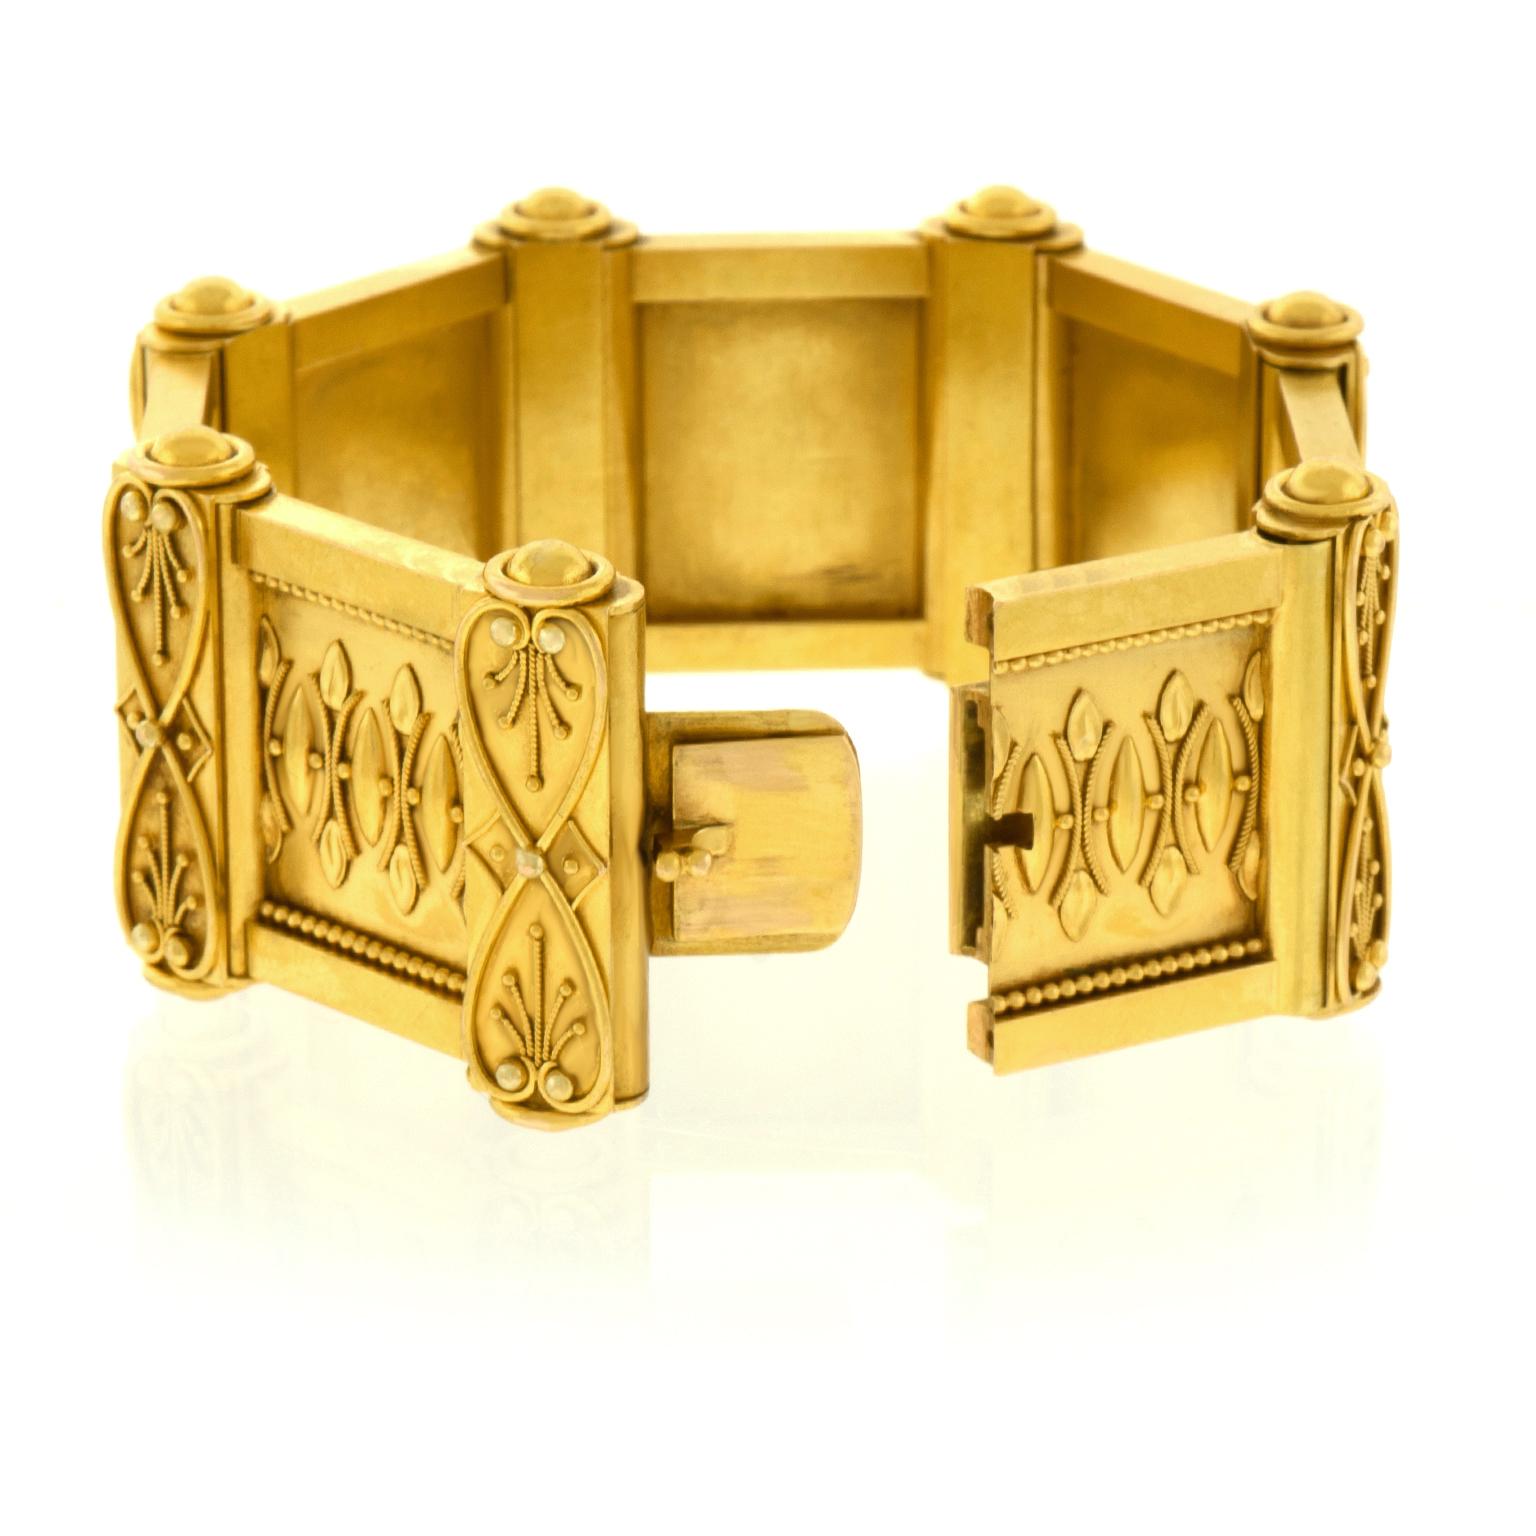 Antique Renaissance Revival Gold Bracelet 3